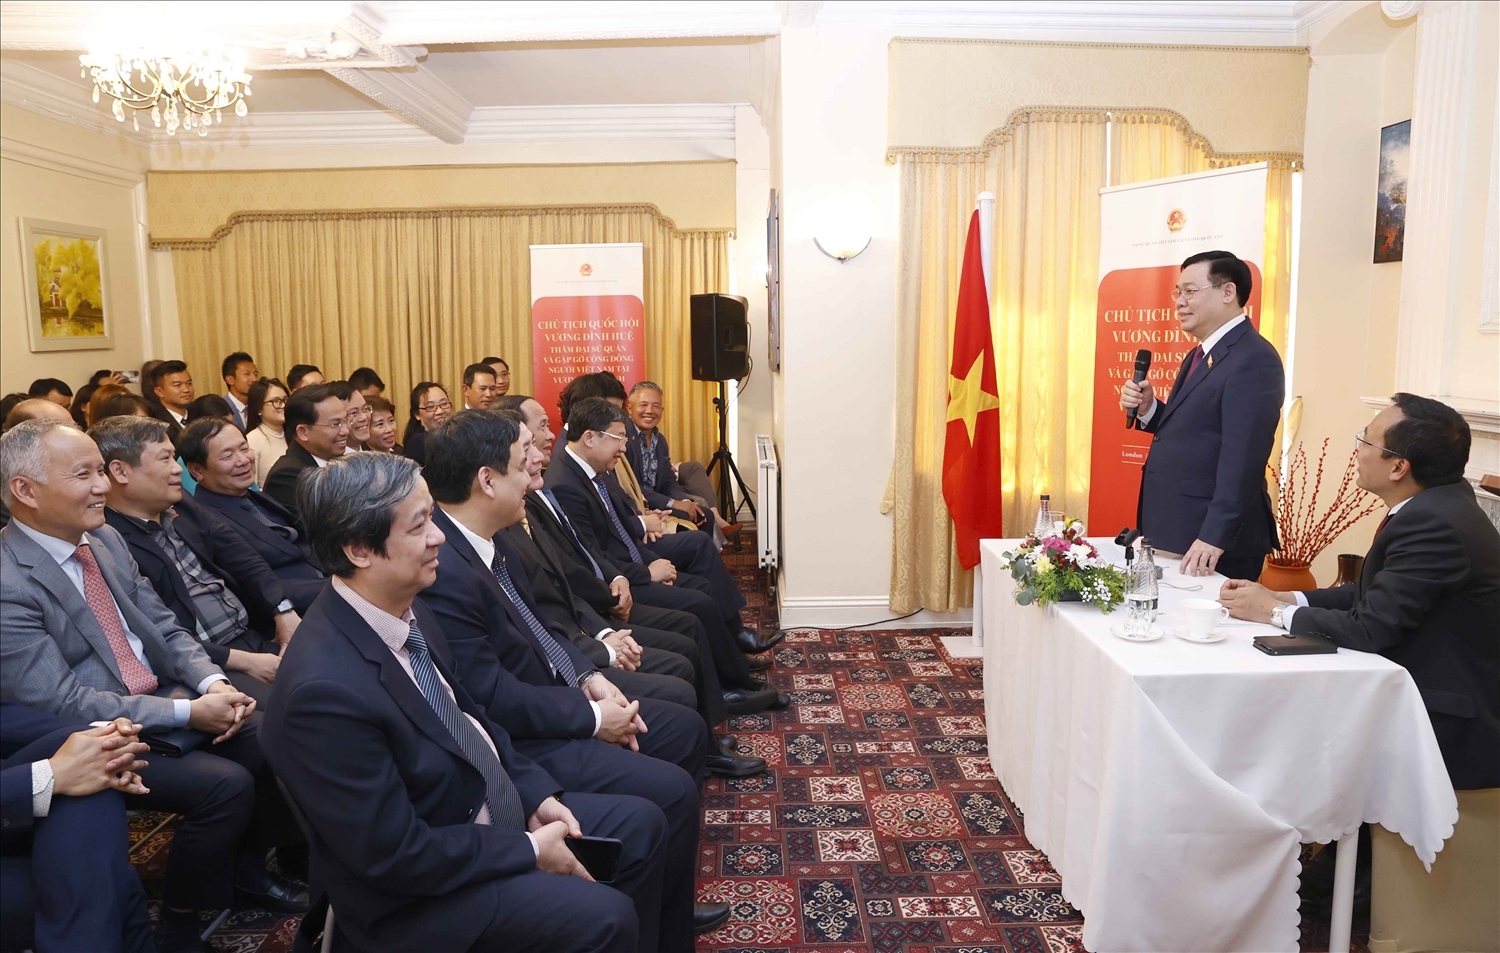 Chủ tịch Quốc hội Vương Đình Huệ thăm Đại sứ quán và gặp gỡ cộng đồng người Việt tại Anh 1